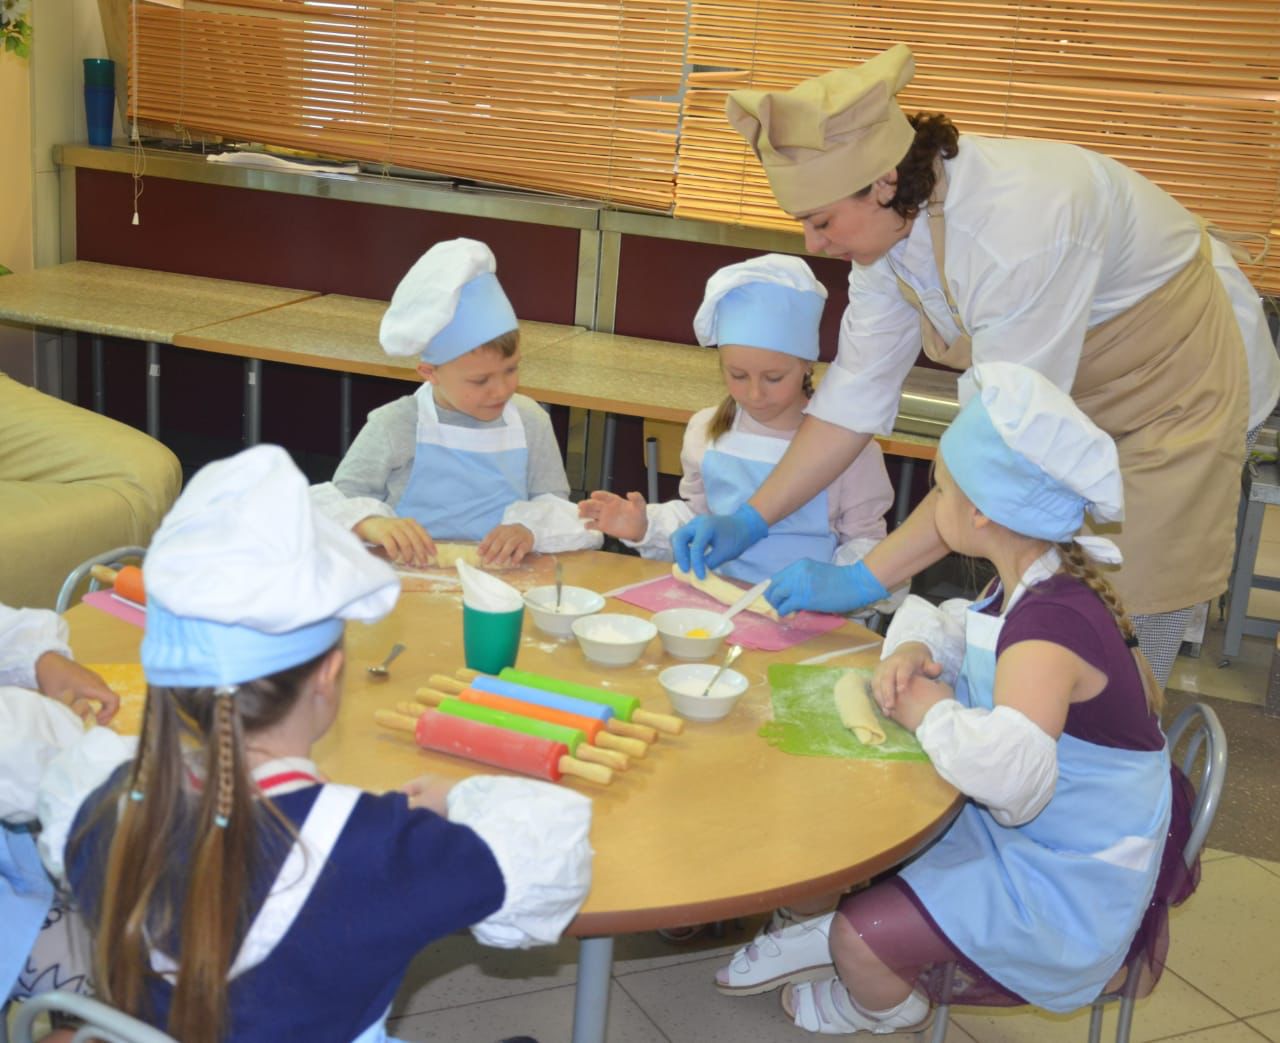 Кулинарный мастер-класс по приготовлению булочек с сахаром прошел в столичном детском саду, фото